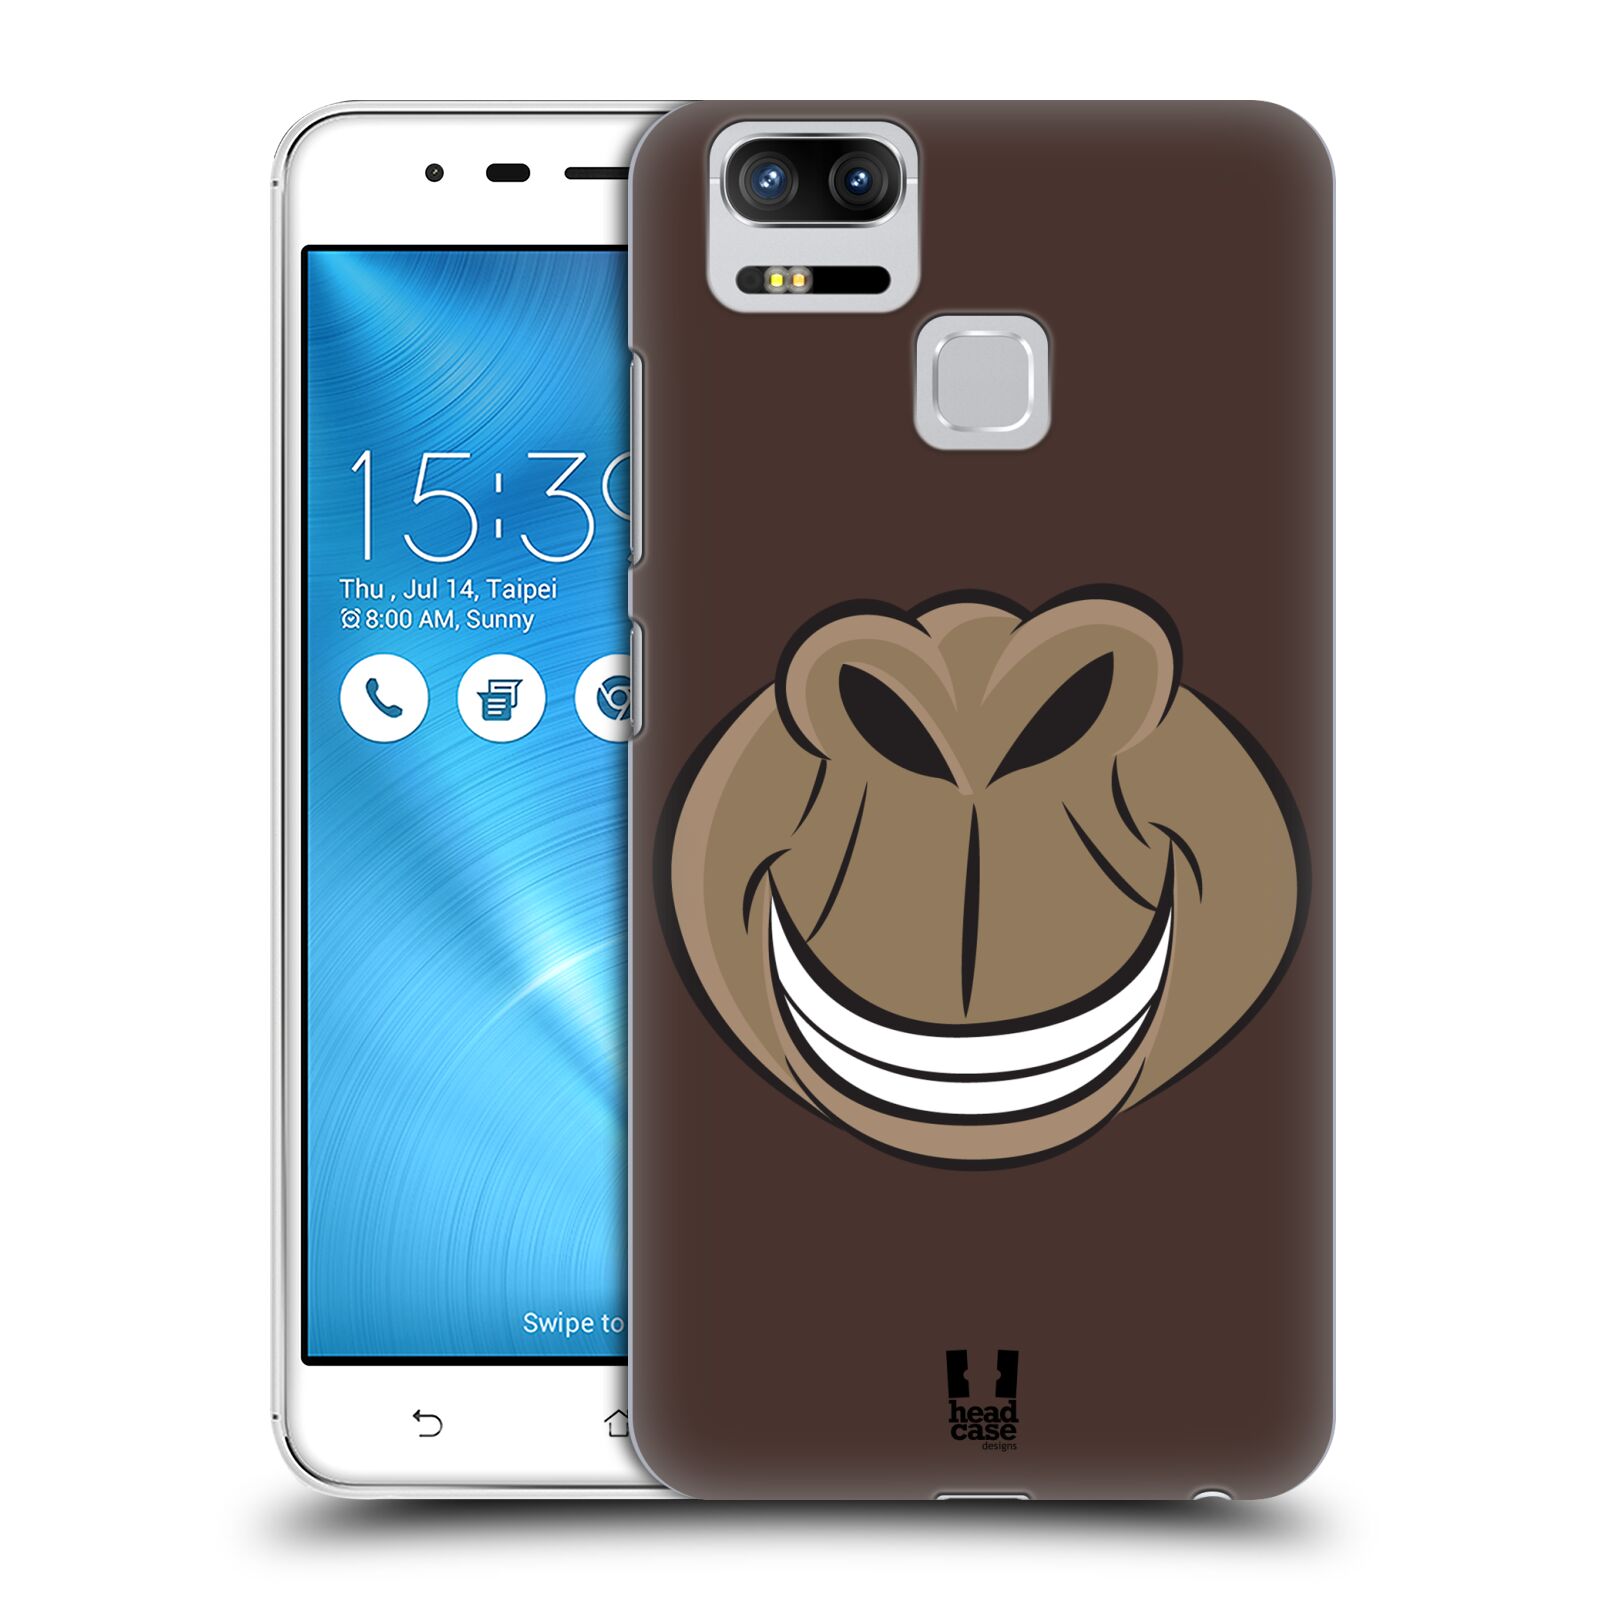 HEAD CASE plastový obal na mobil Asus Zenfone 3 Zoom ZE553KL vzor Zvířecí úsměv opice hnědá